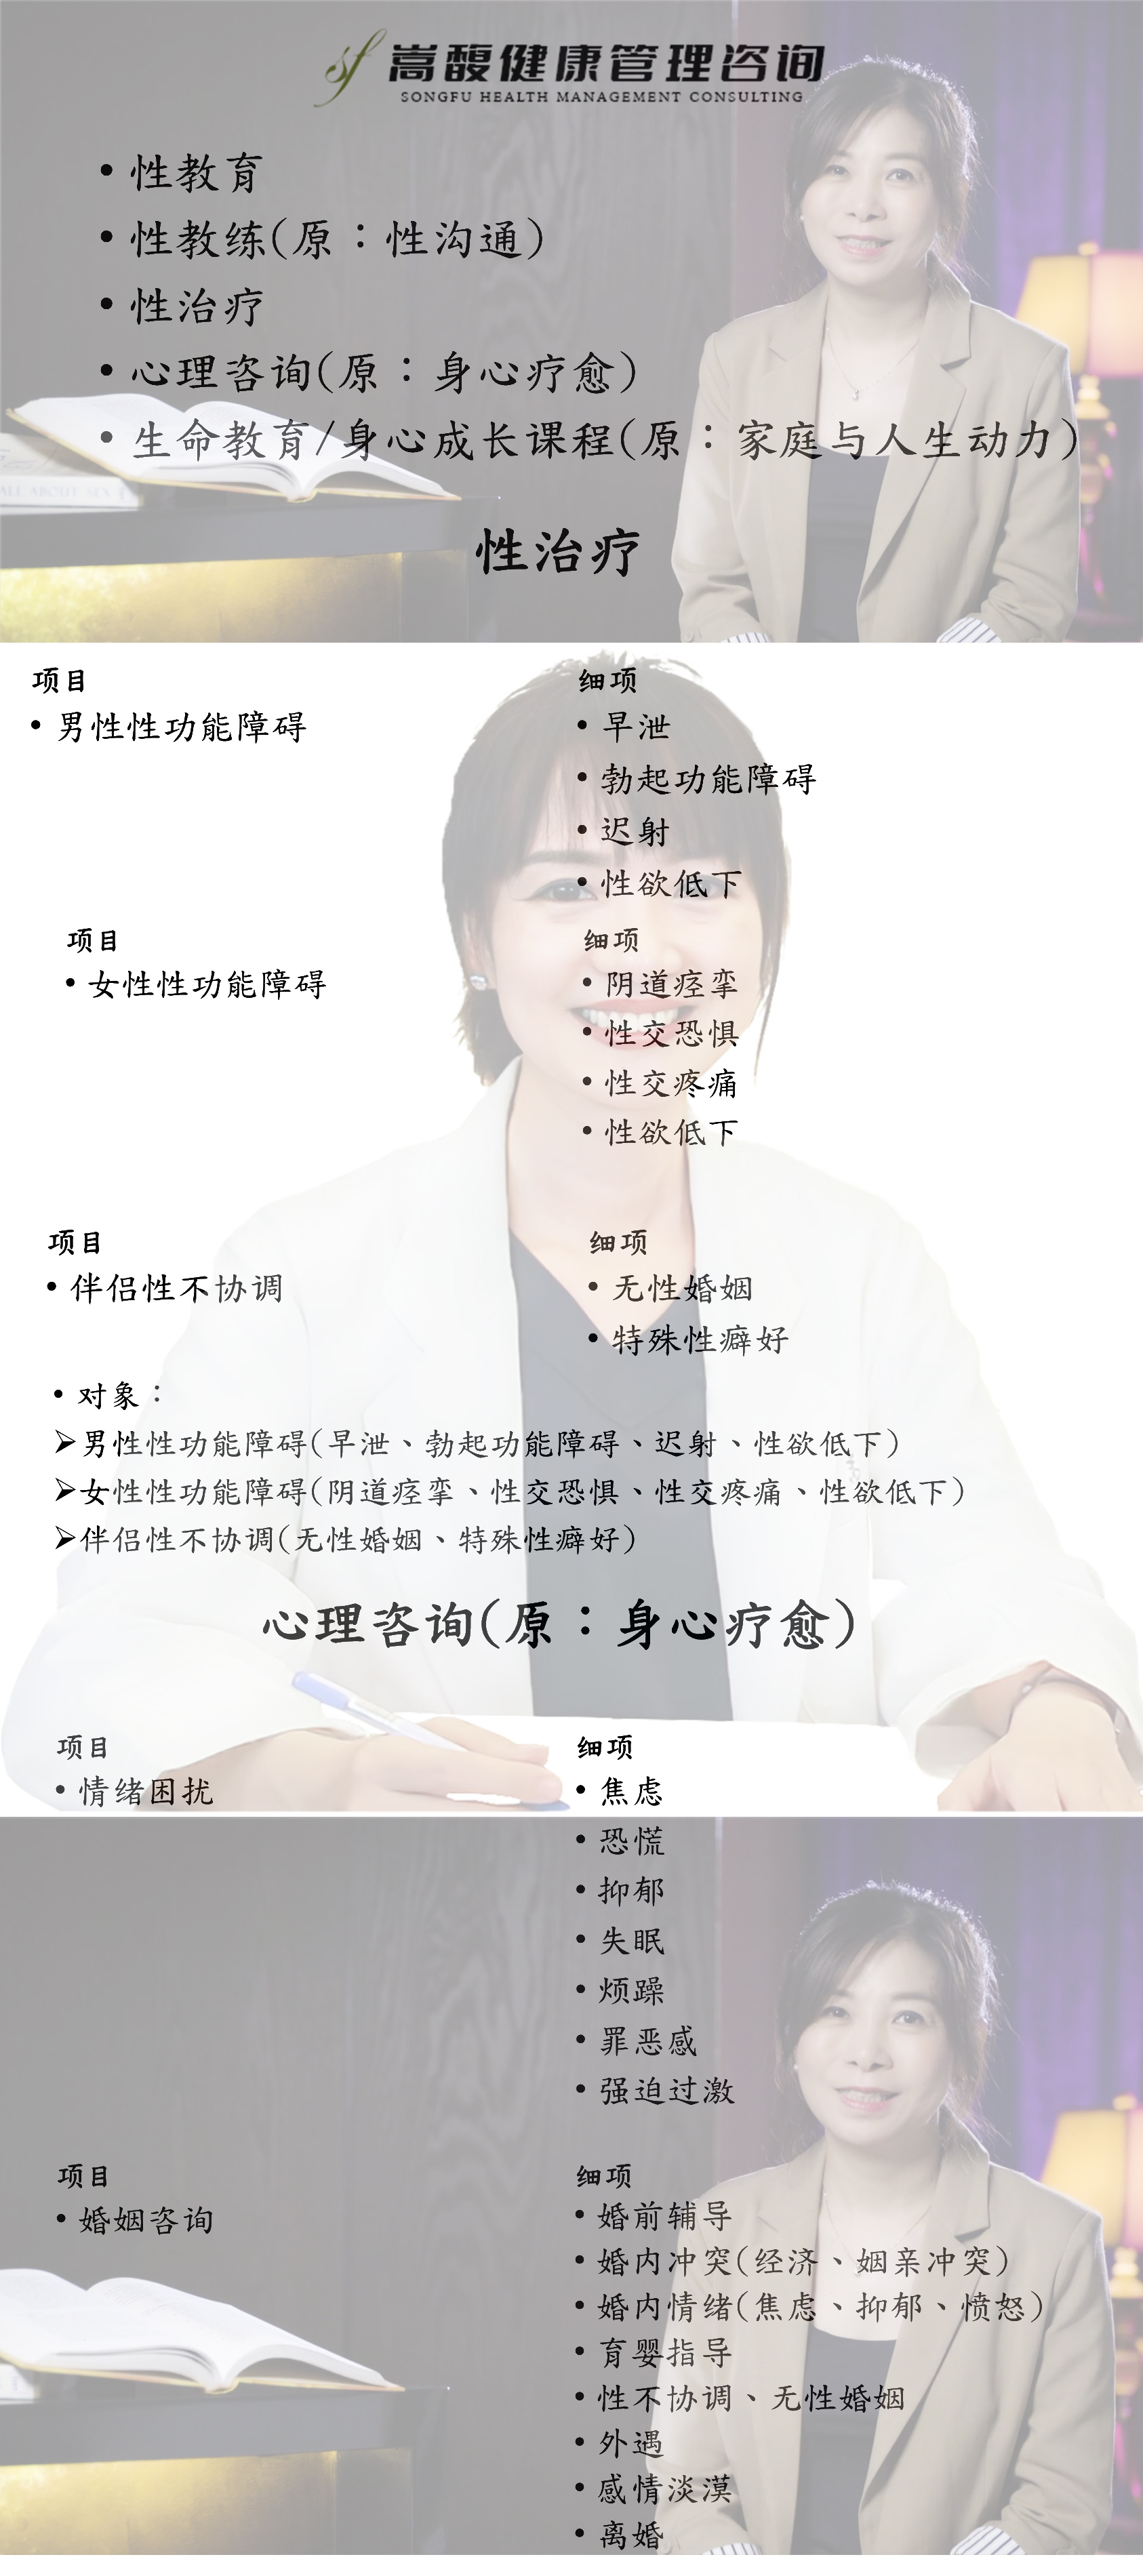 深圳治疗男性阳痿早泄的性心理机构-嵩馥健康管理中心(图1)